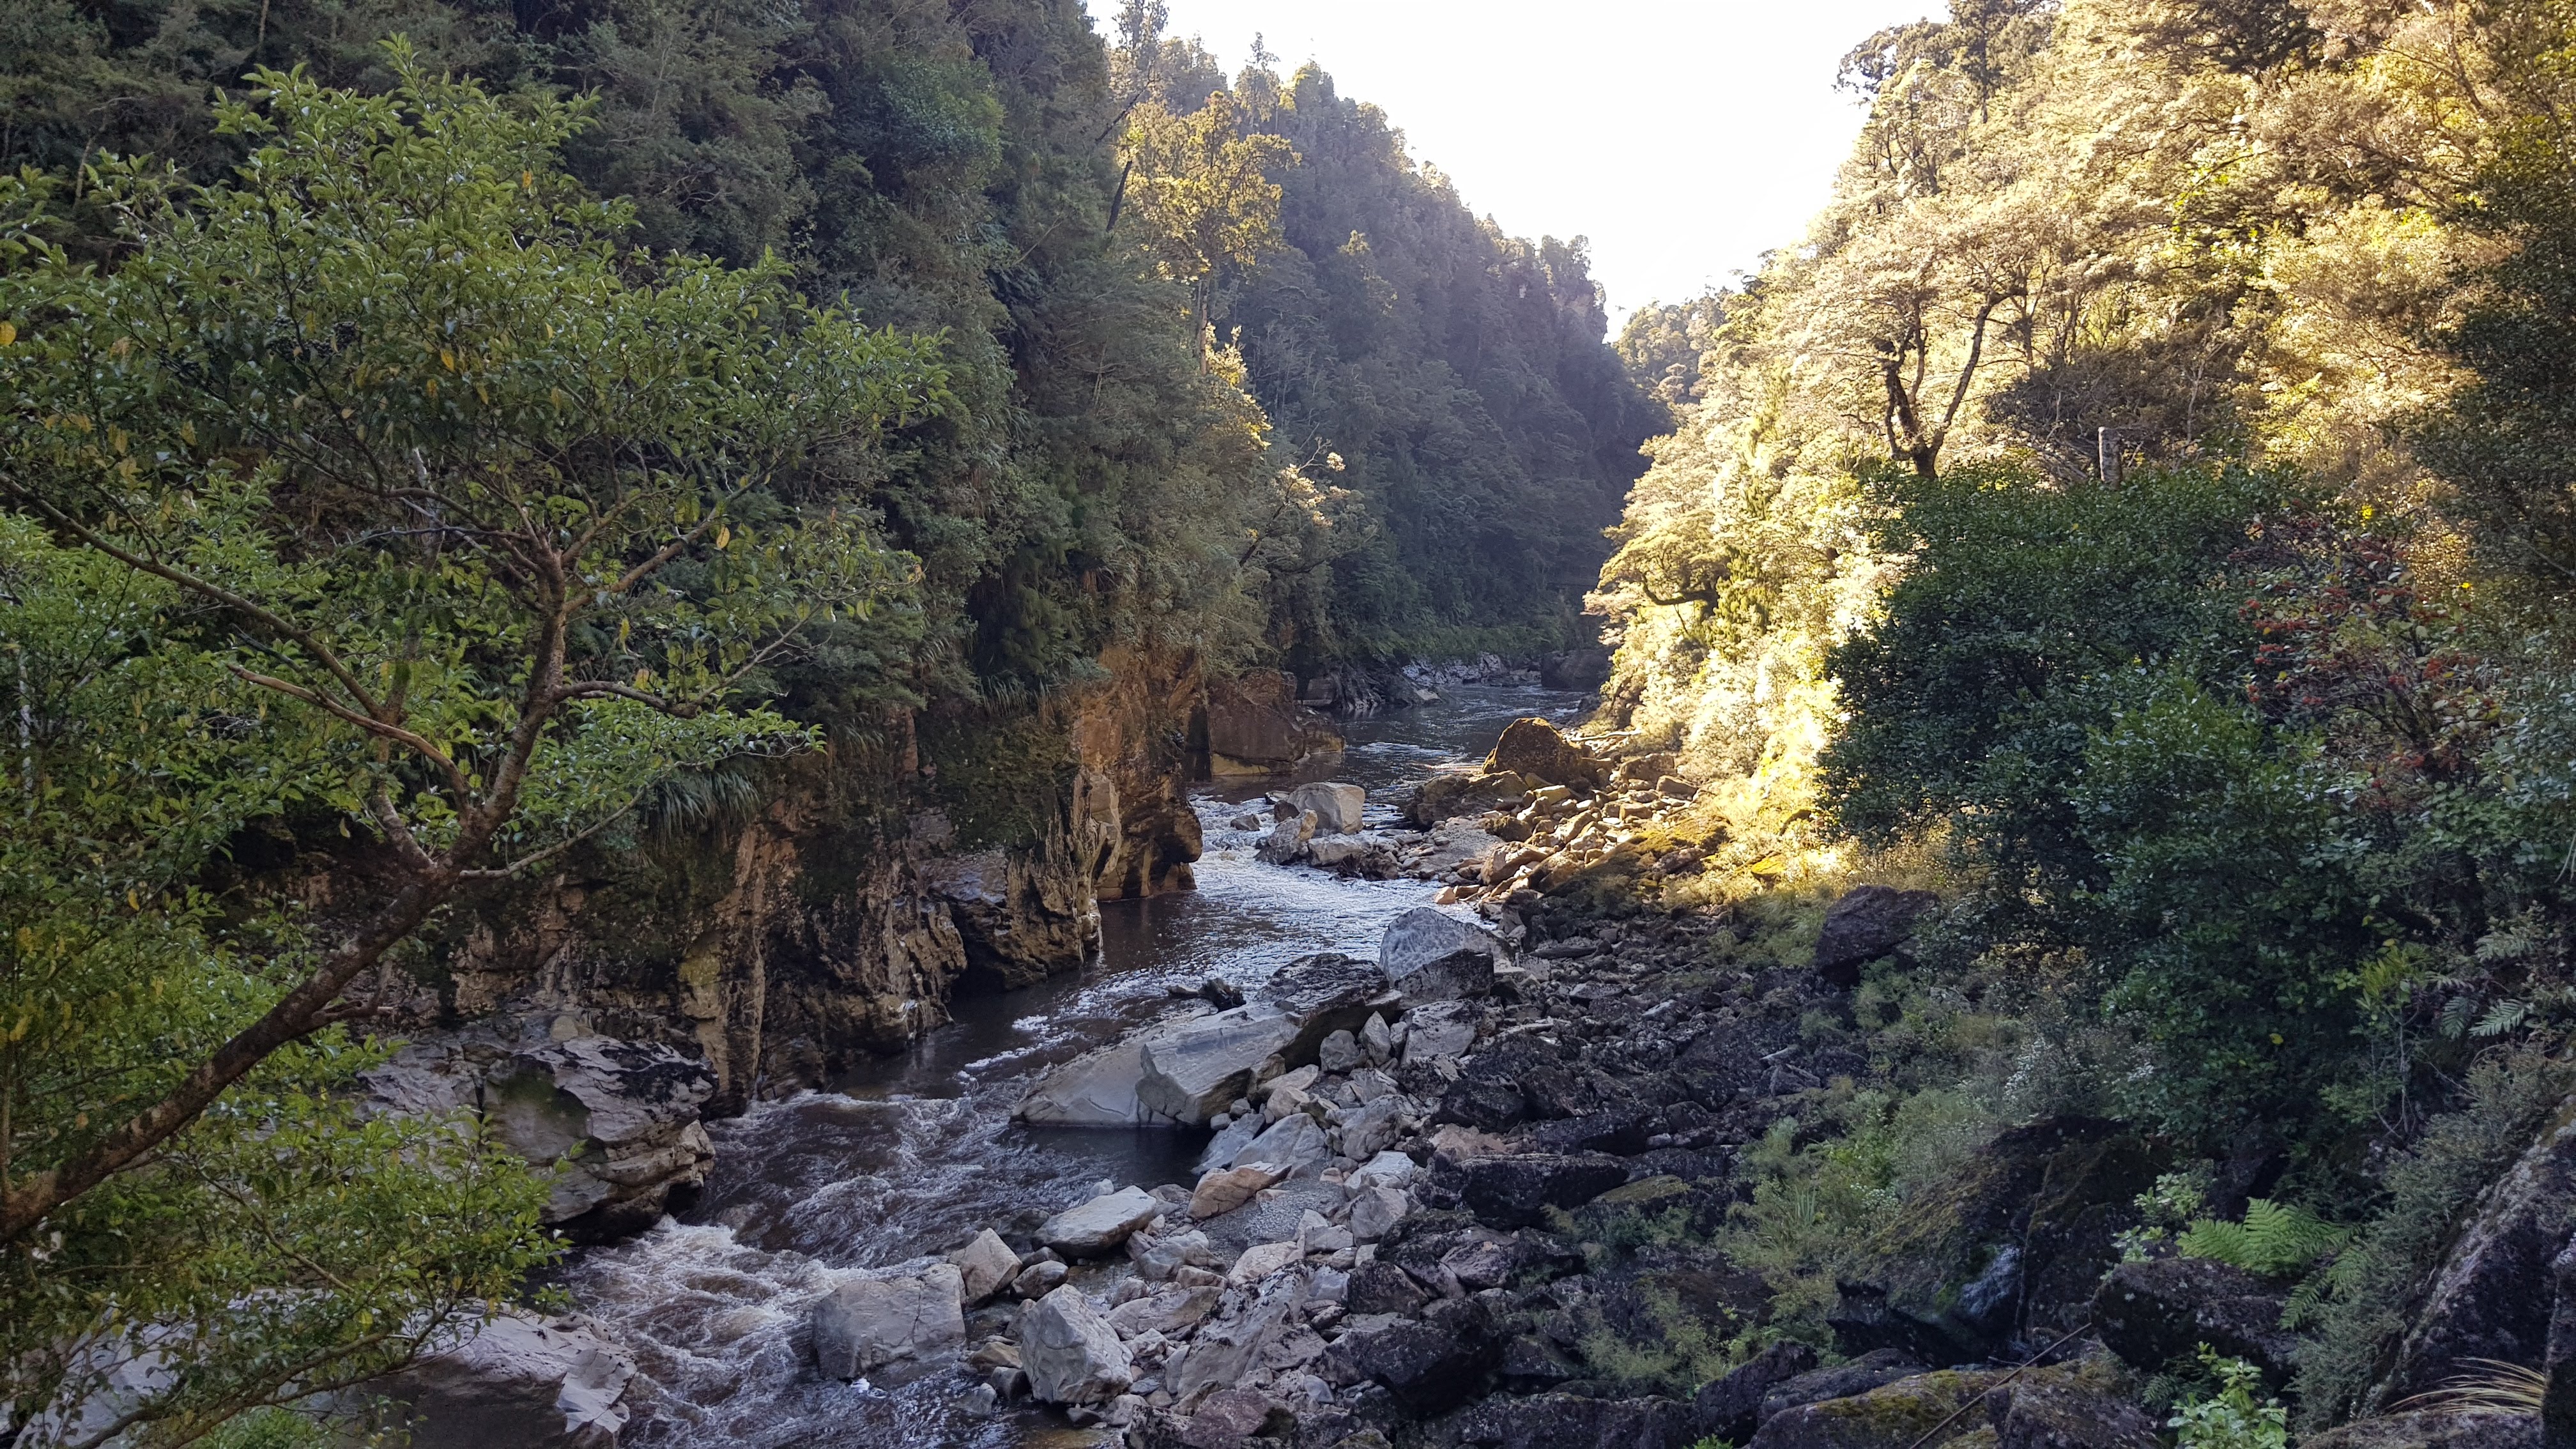 The Ngakawau River gorge